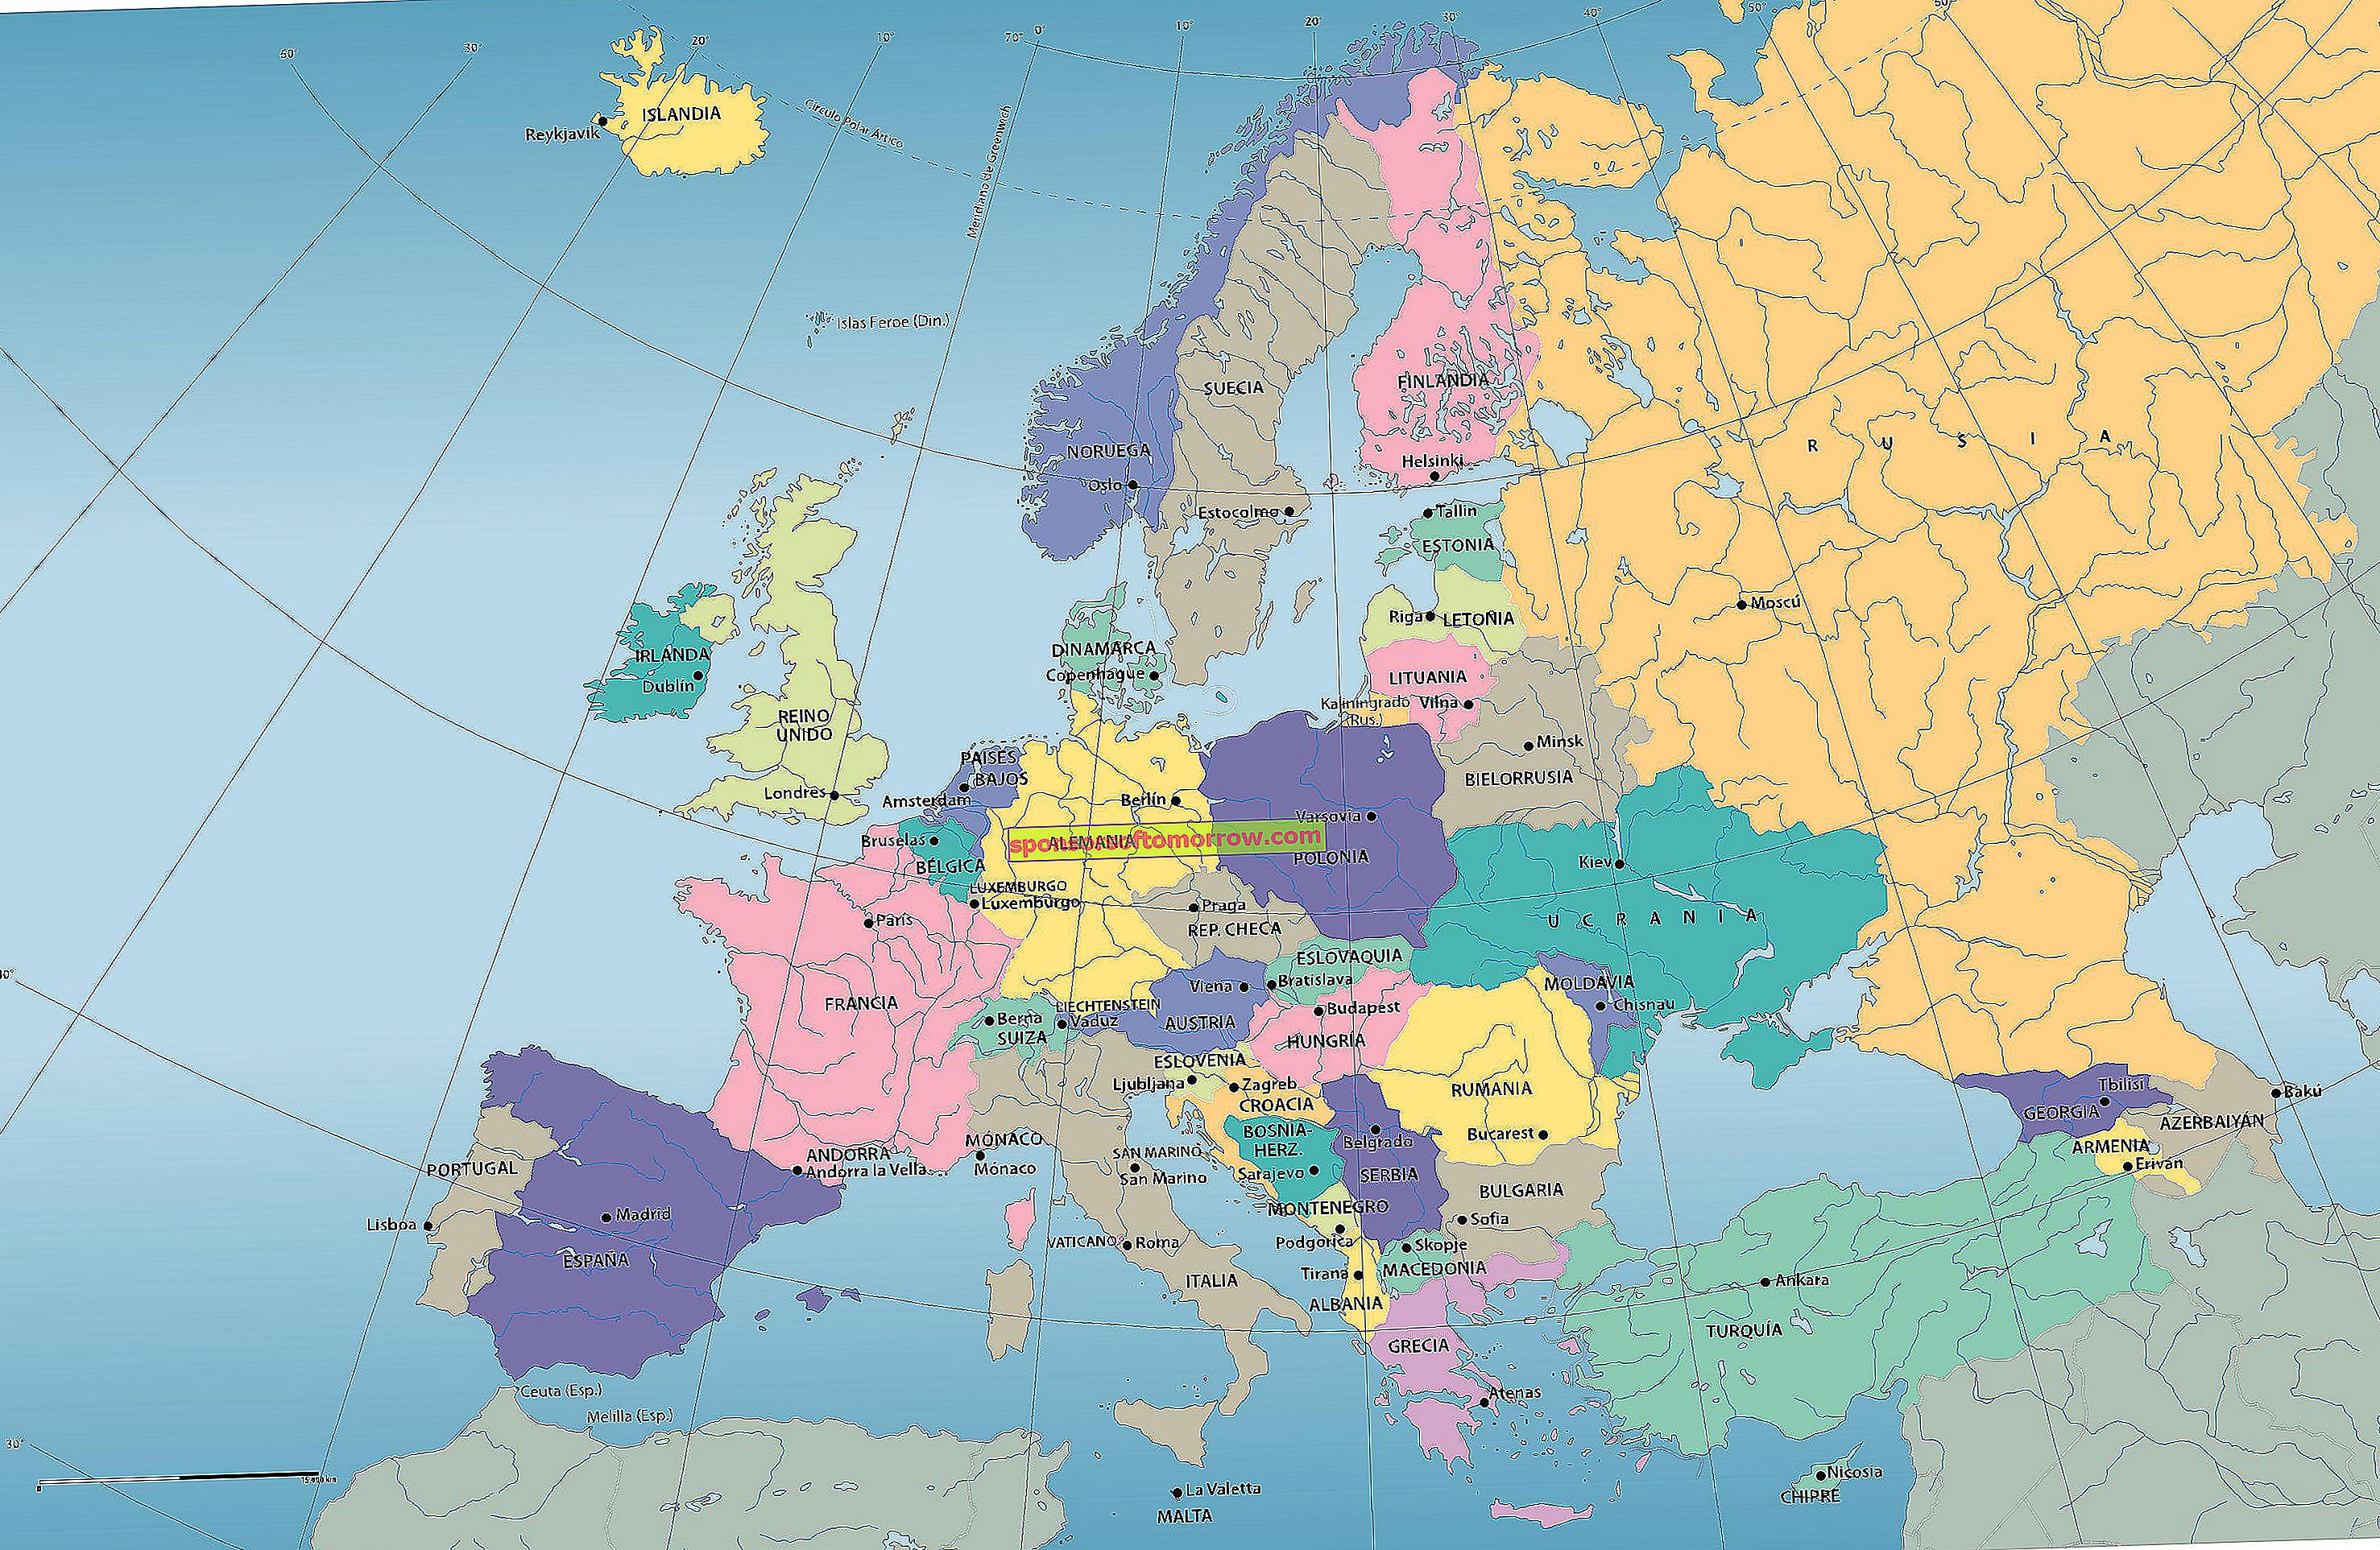 แผนที่ทางการเมืองอื่นของยุโรป